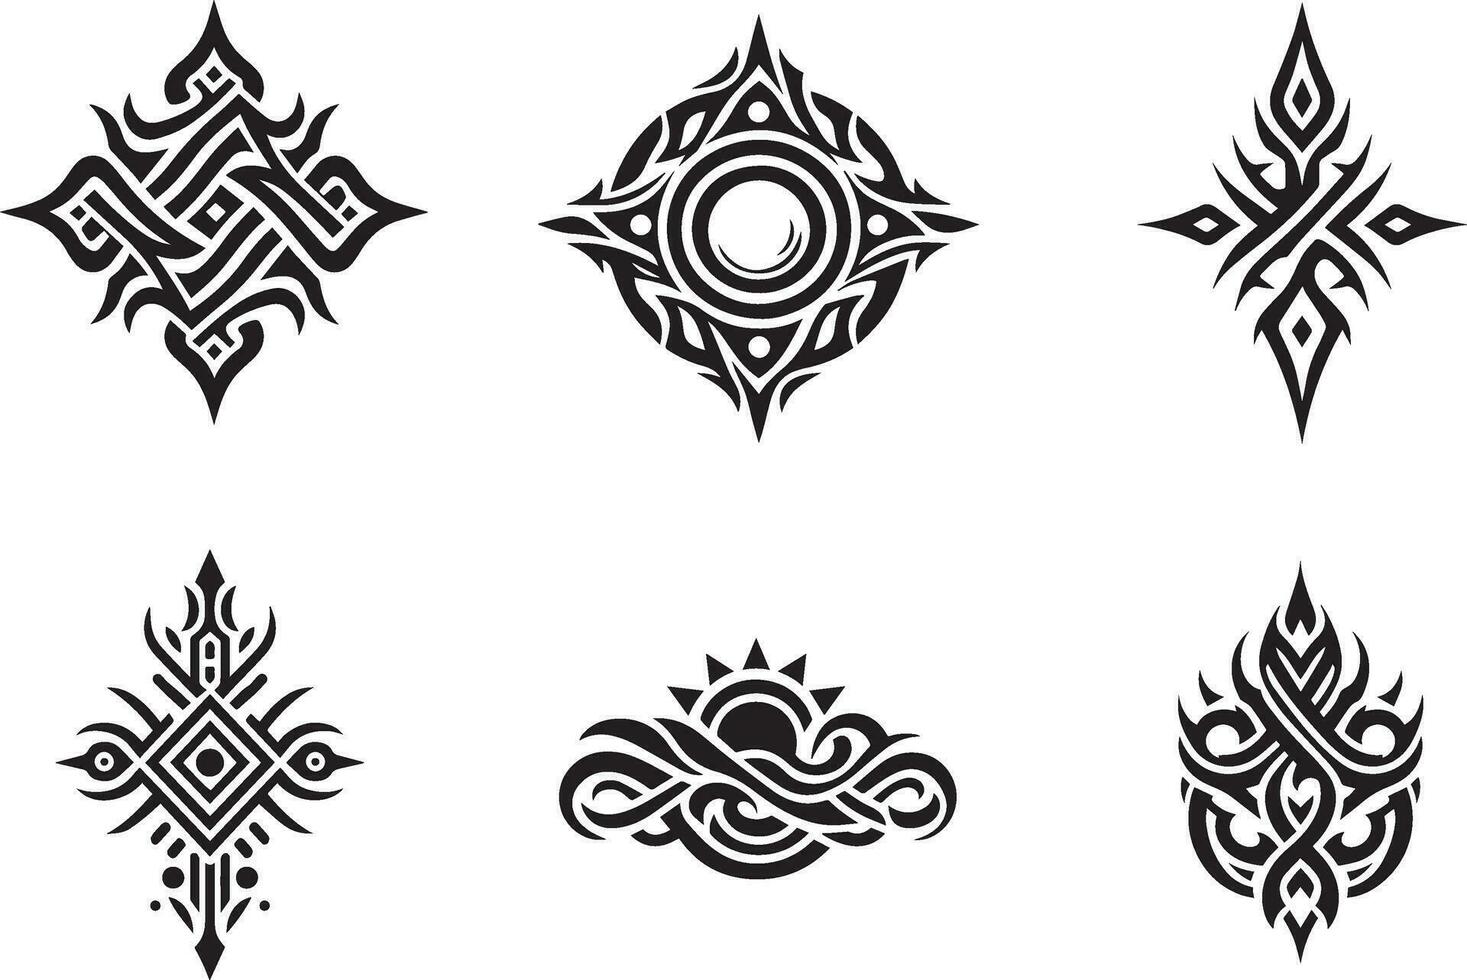 Tribal tattoo design vector art illustration